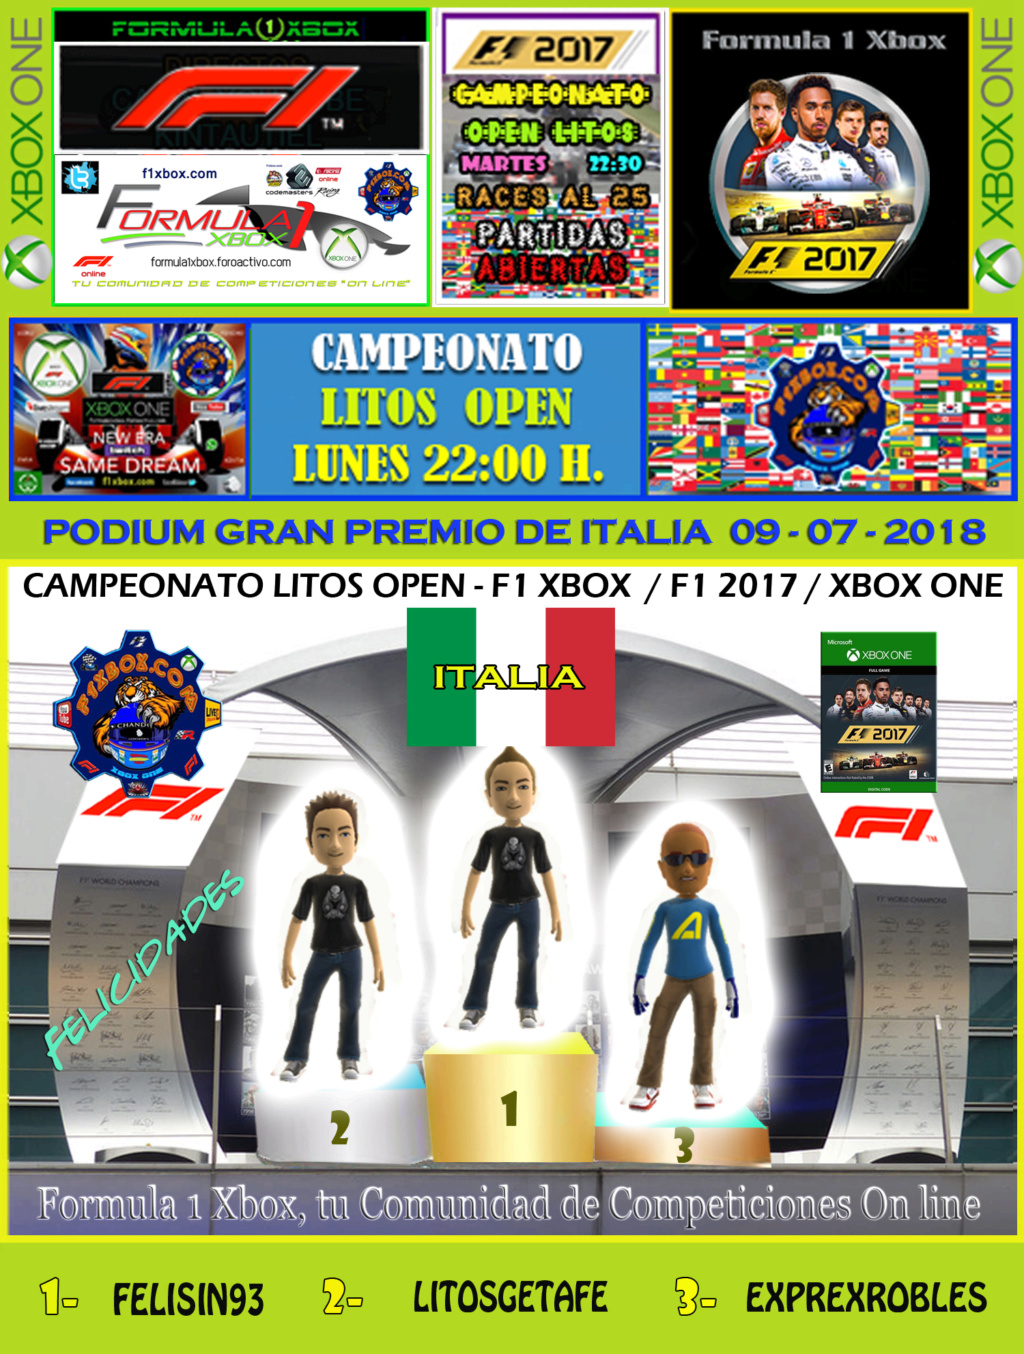 F1 2017 - XBOX ONE / CAMPEONATO LITOS OPEN - F1 XBOX / RESULTADOS Y PODIUM / G.P. DE AZERBAIYÁN + GP DE ITALIA / LUNES 09 - 07 - 2018. Podium22